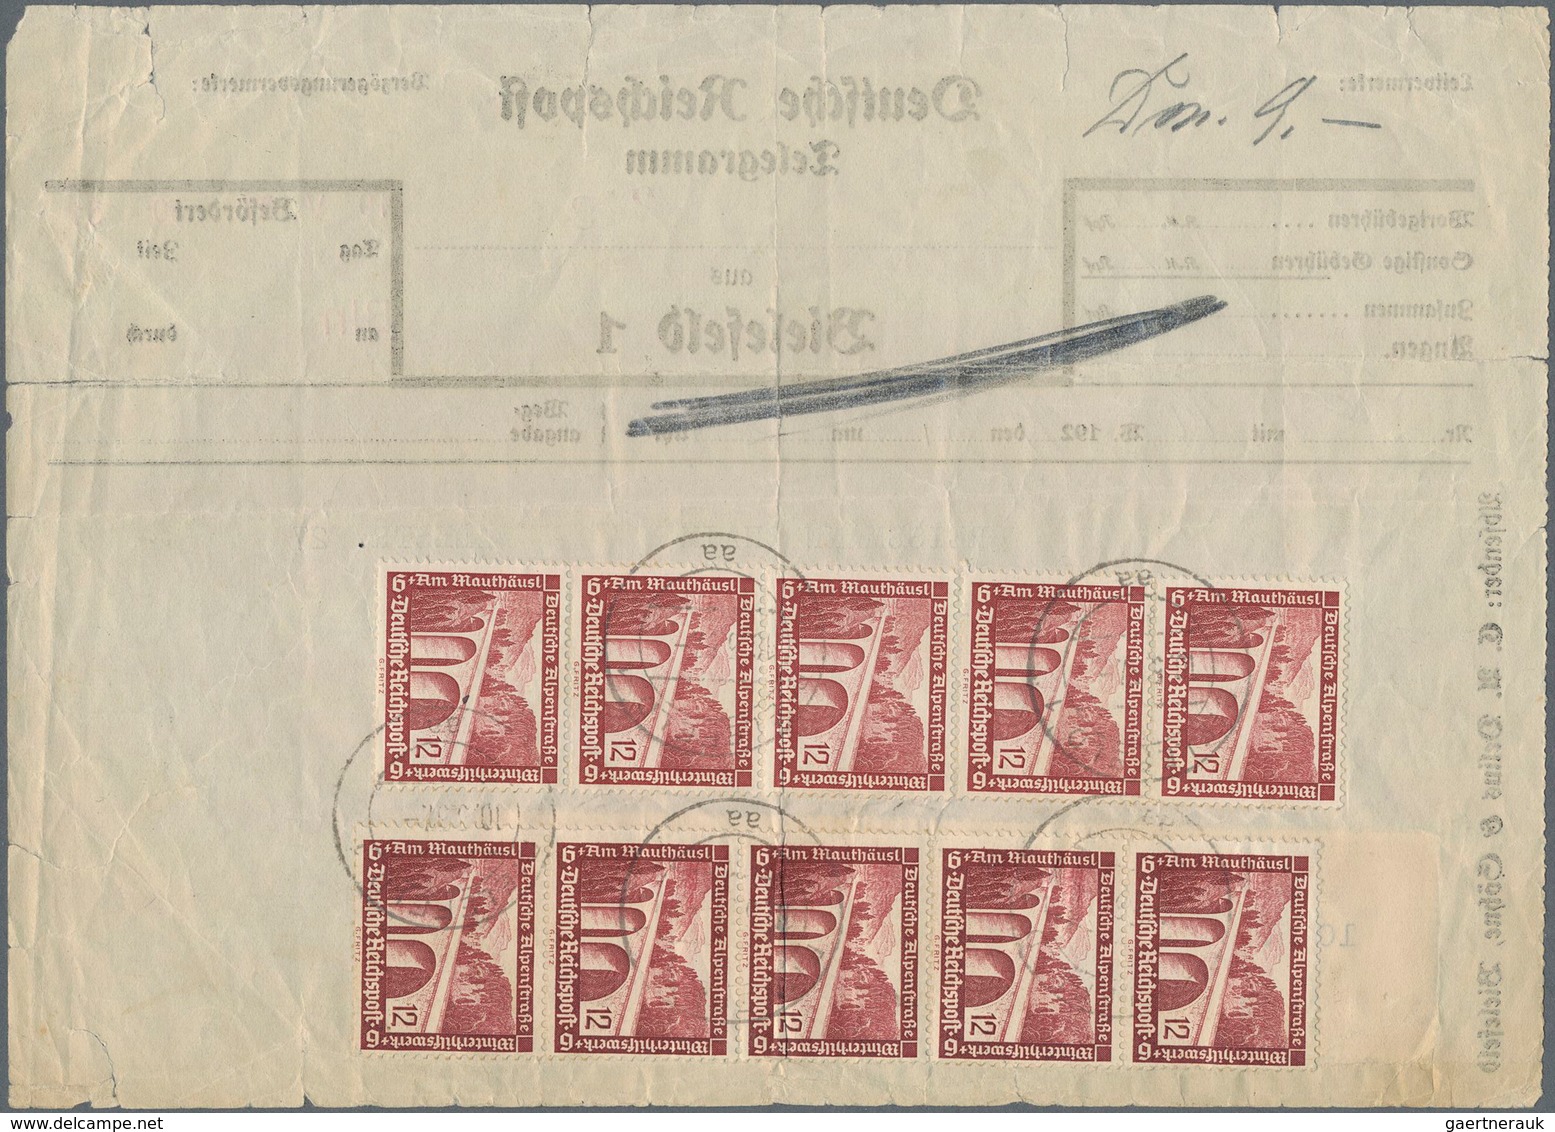 Deutsches Reich - 3. Reich: 1937, Reichspost-Telegramm Aus BIELEFELD Mit Sehr Seltener Mehrfachfrank - Covers & Documents